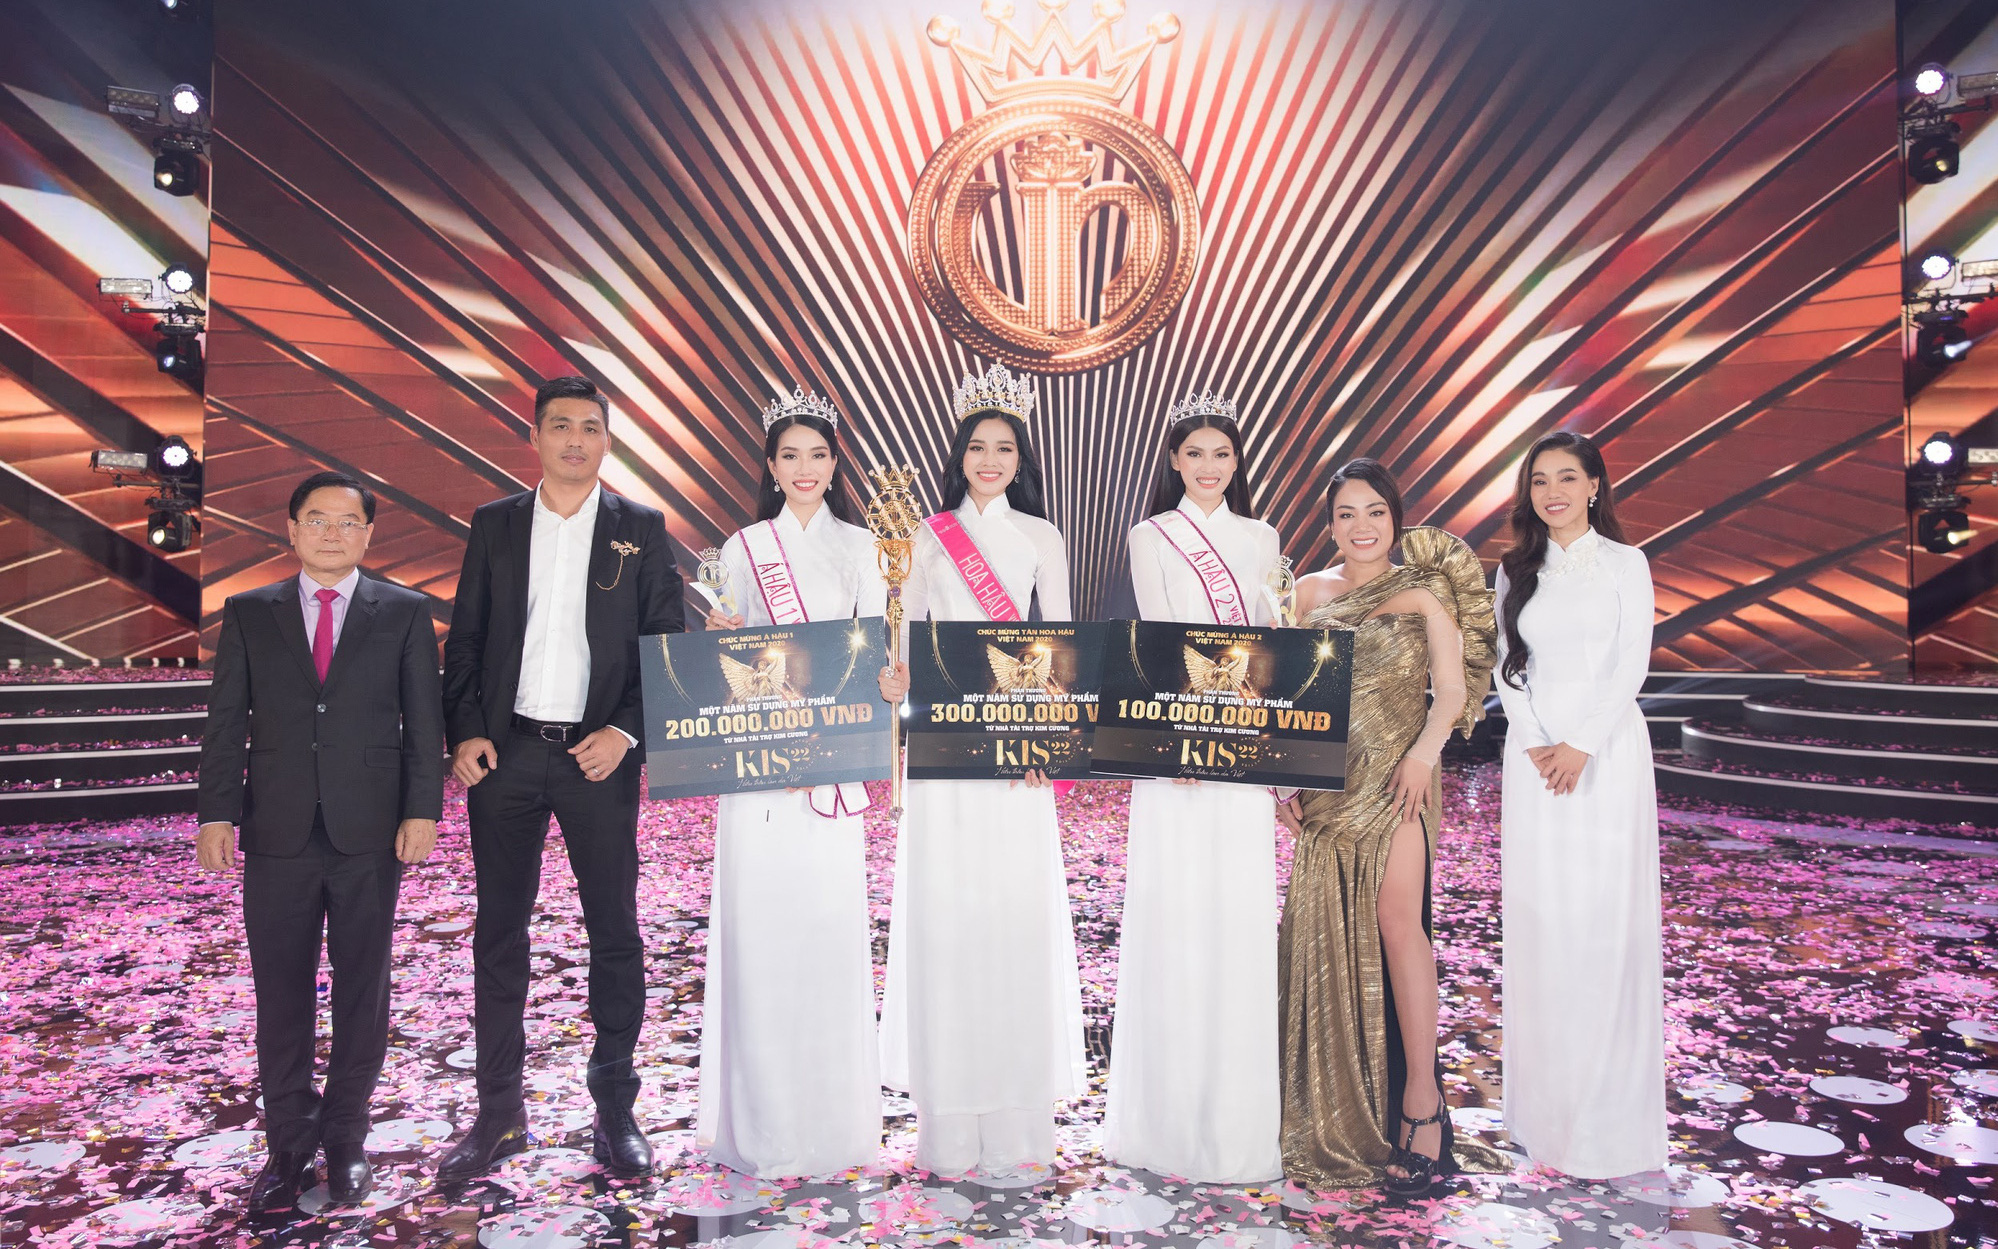 KIS22 đồng hành cùng Hoa hậu Việt Nam 2020 tại đêm Chung kết - Sự thăng hoa của nhan sắc và lòng nhân ái